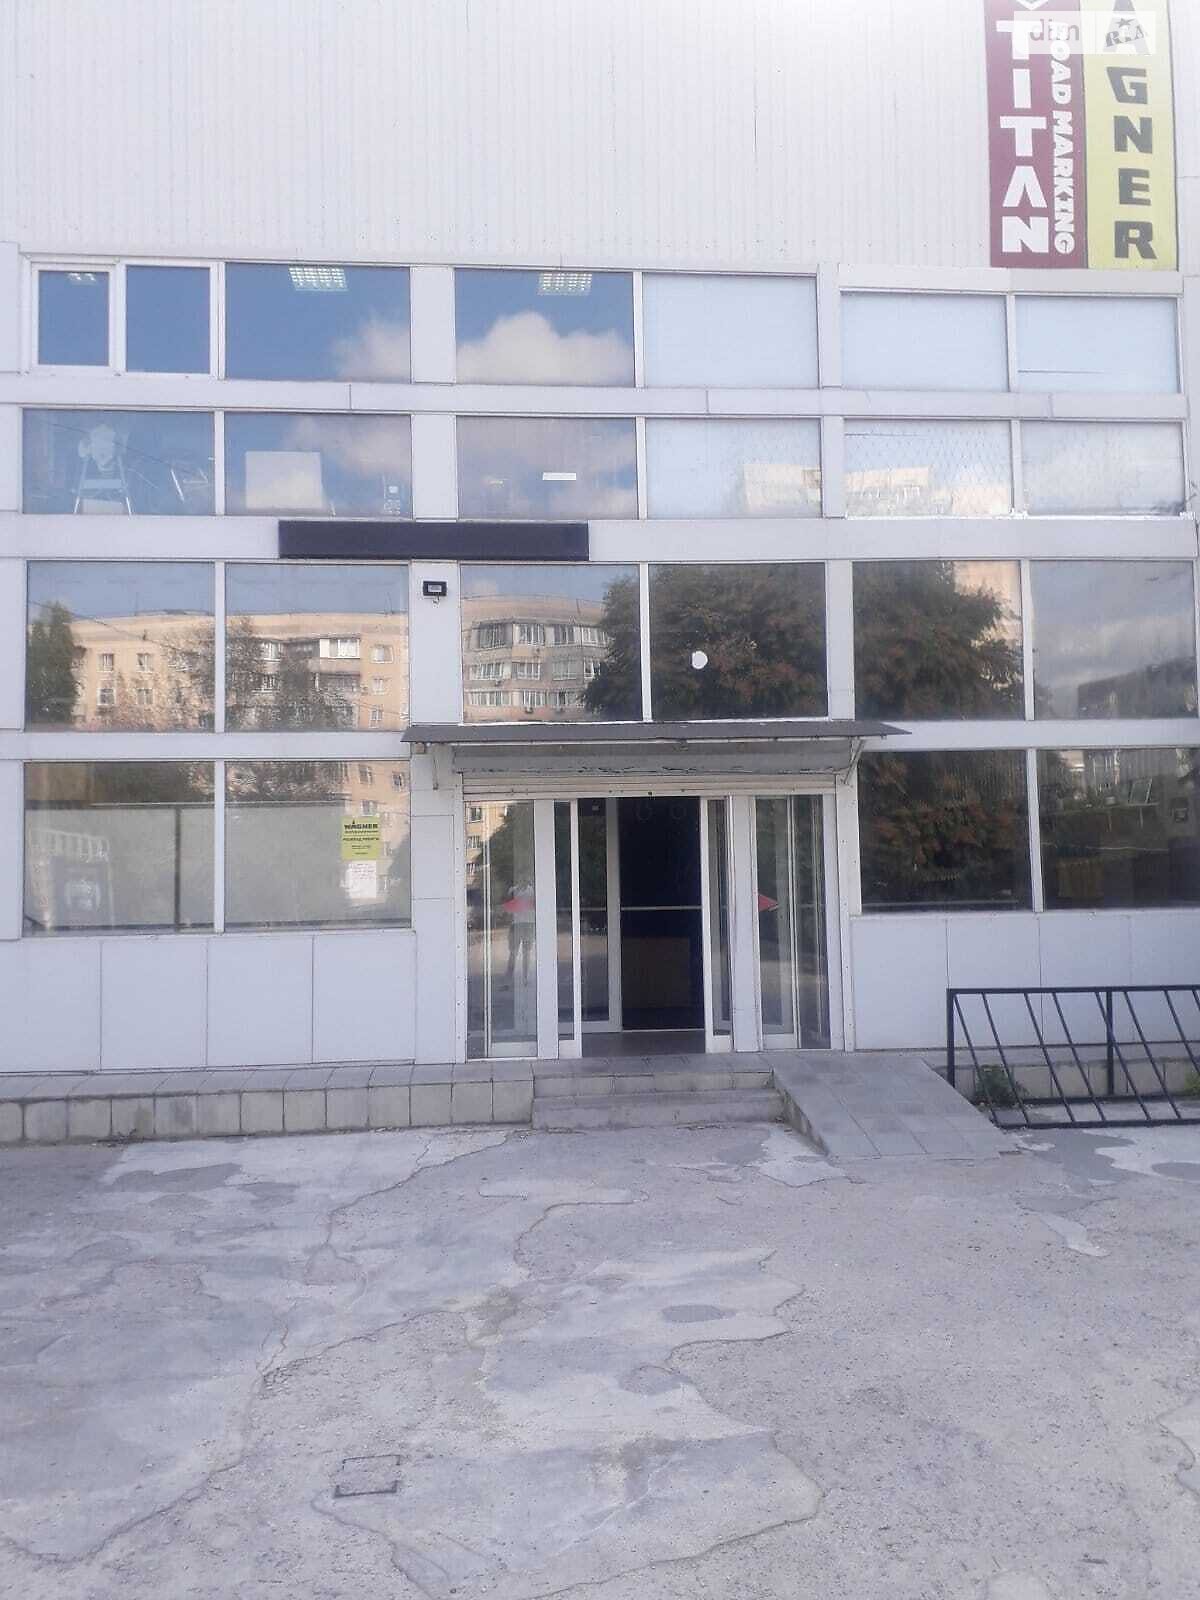 Аренда офисного помещения в Одессе, Семена Палия улица Днепропетровская дорога, помещений -, этаж - 1 фото 1